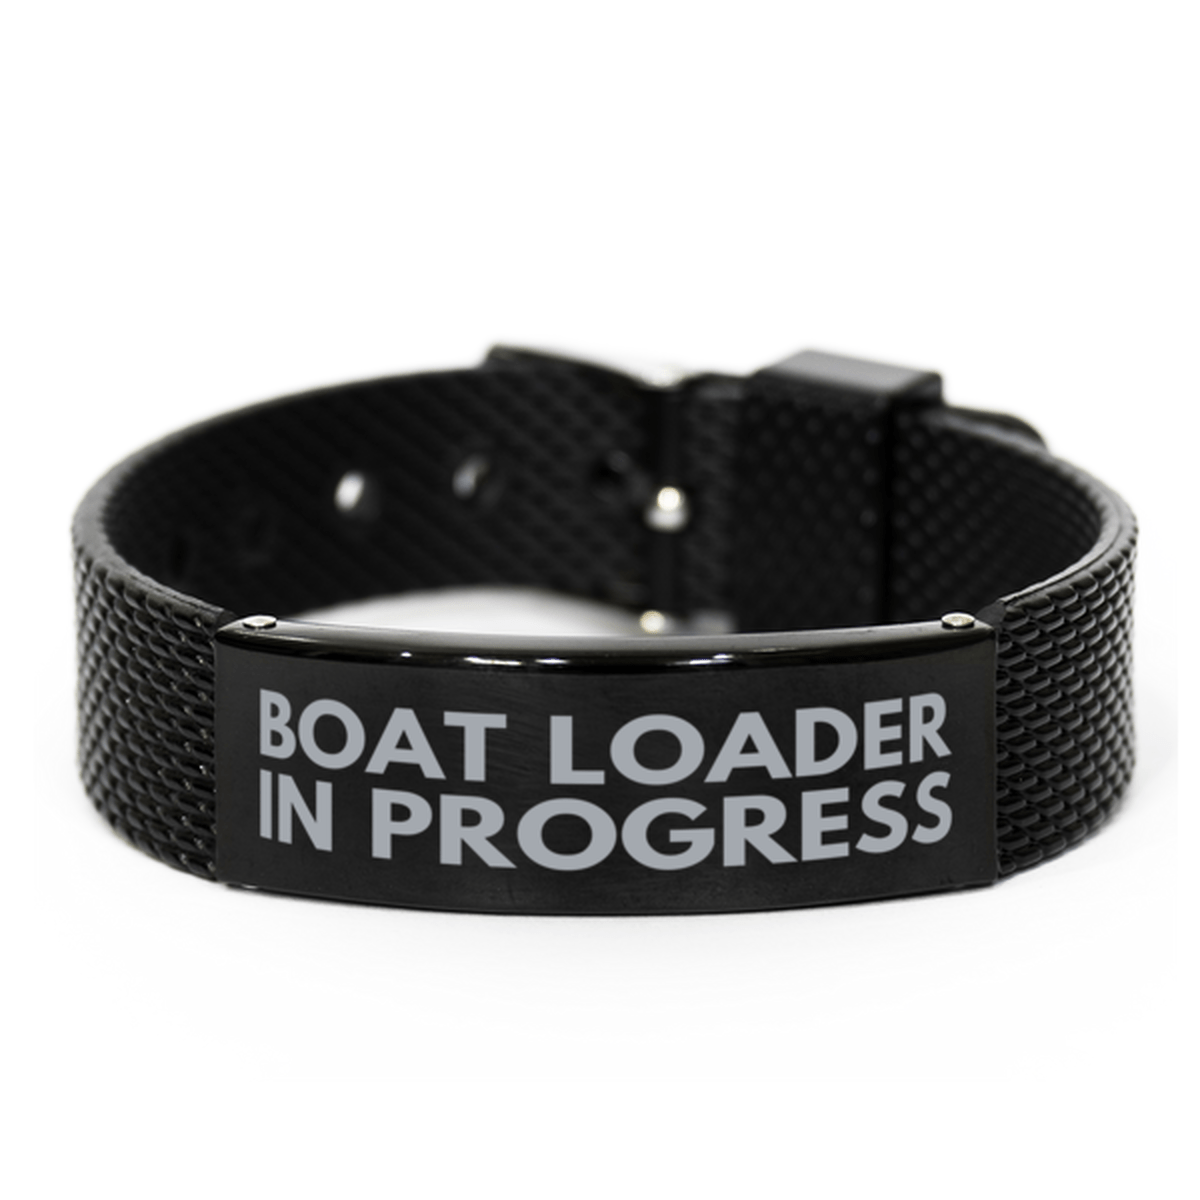 Inspirational Boat Loader Black Shark Mesh Bracelet, Boat Loader In Progress, Best Graduation Gifts for Students